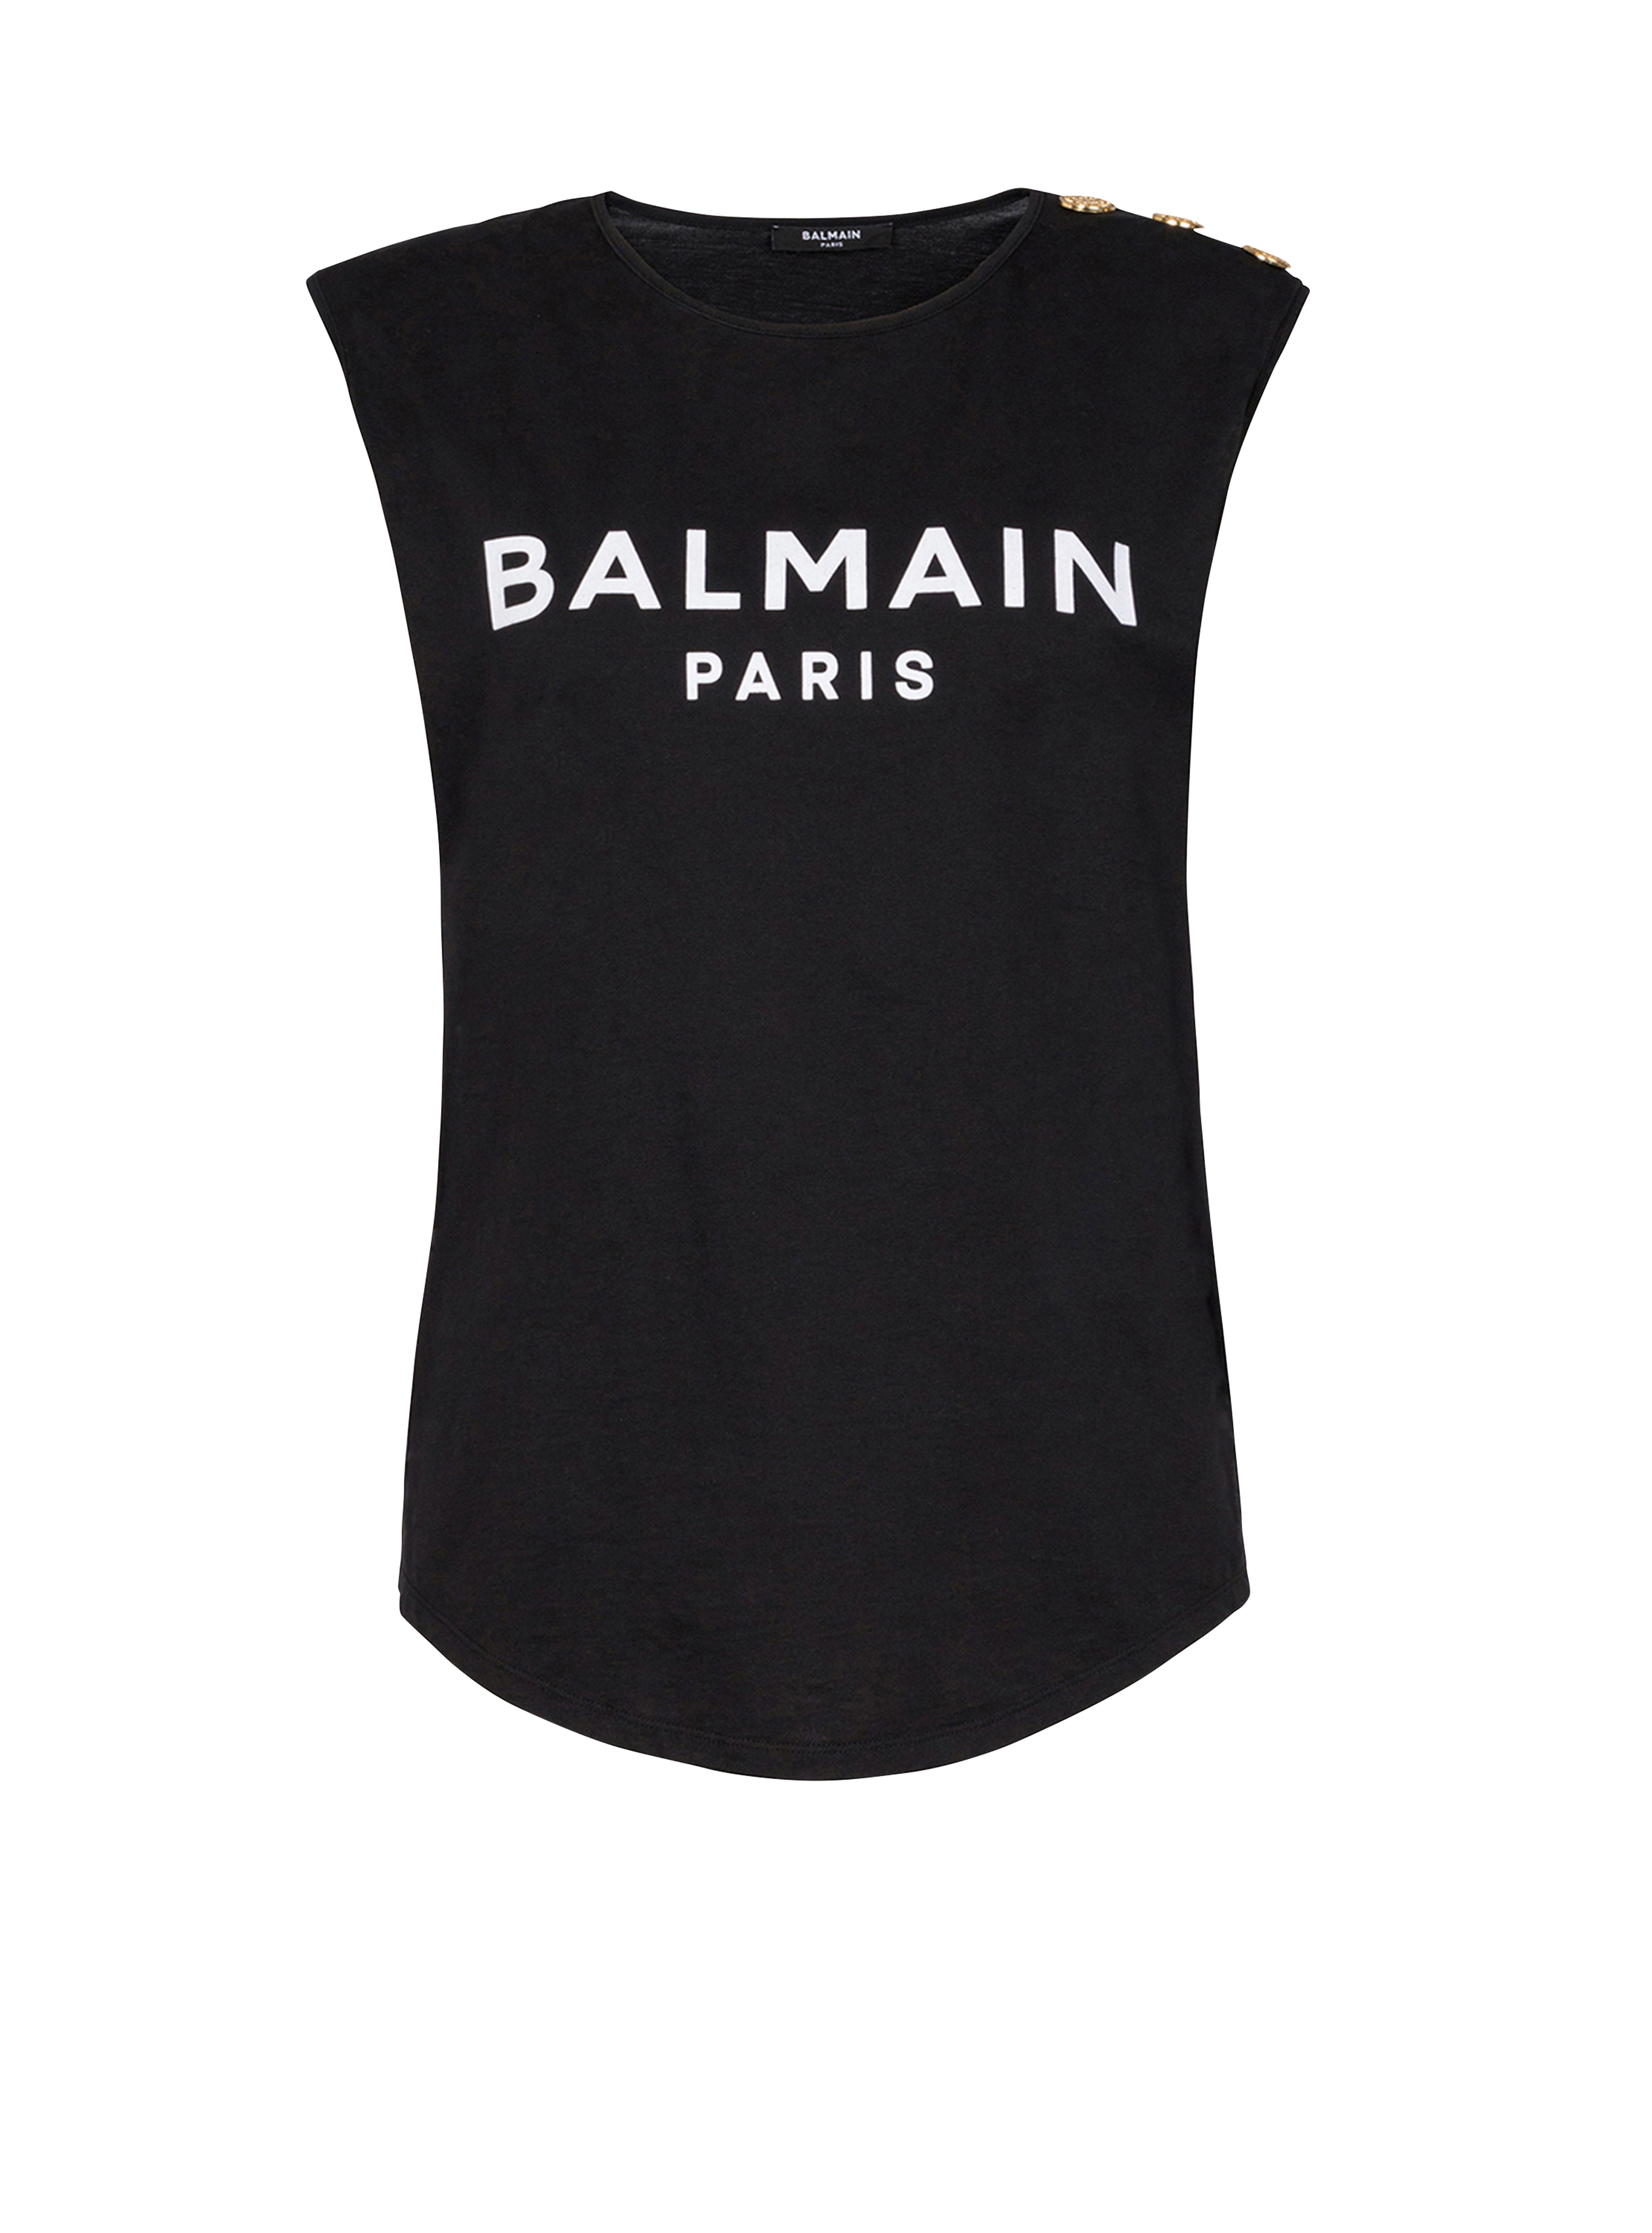 T-shirt en coton imprimé logo Balmain, noir